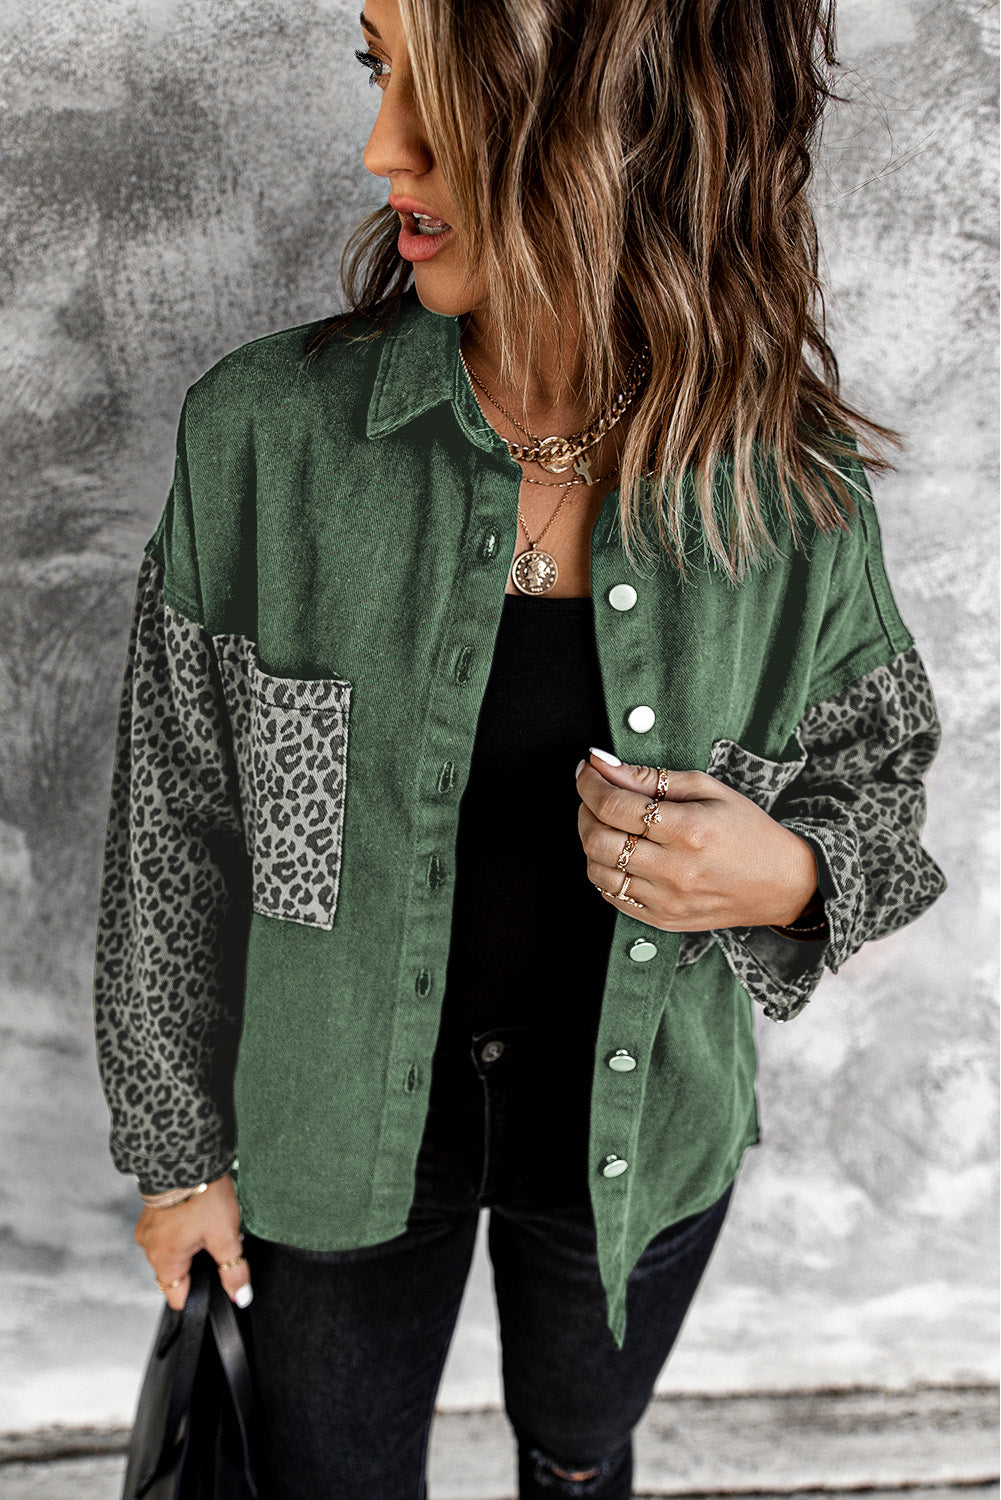 Contrast Leopard Denim Jacket for Women